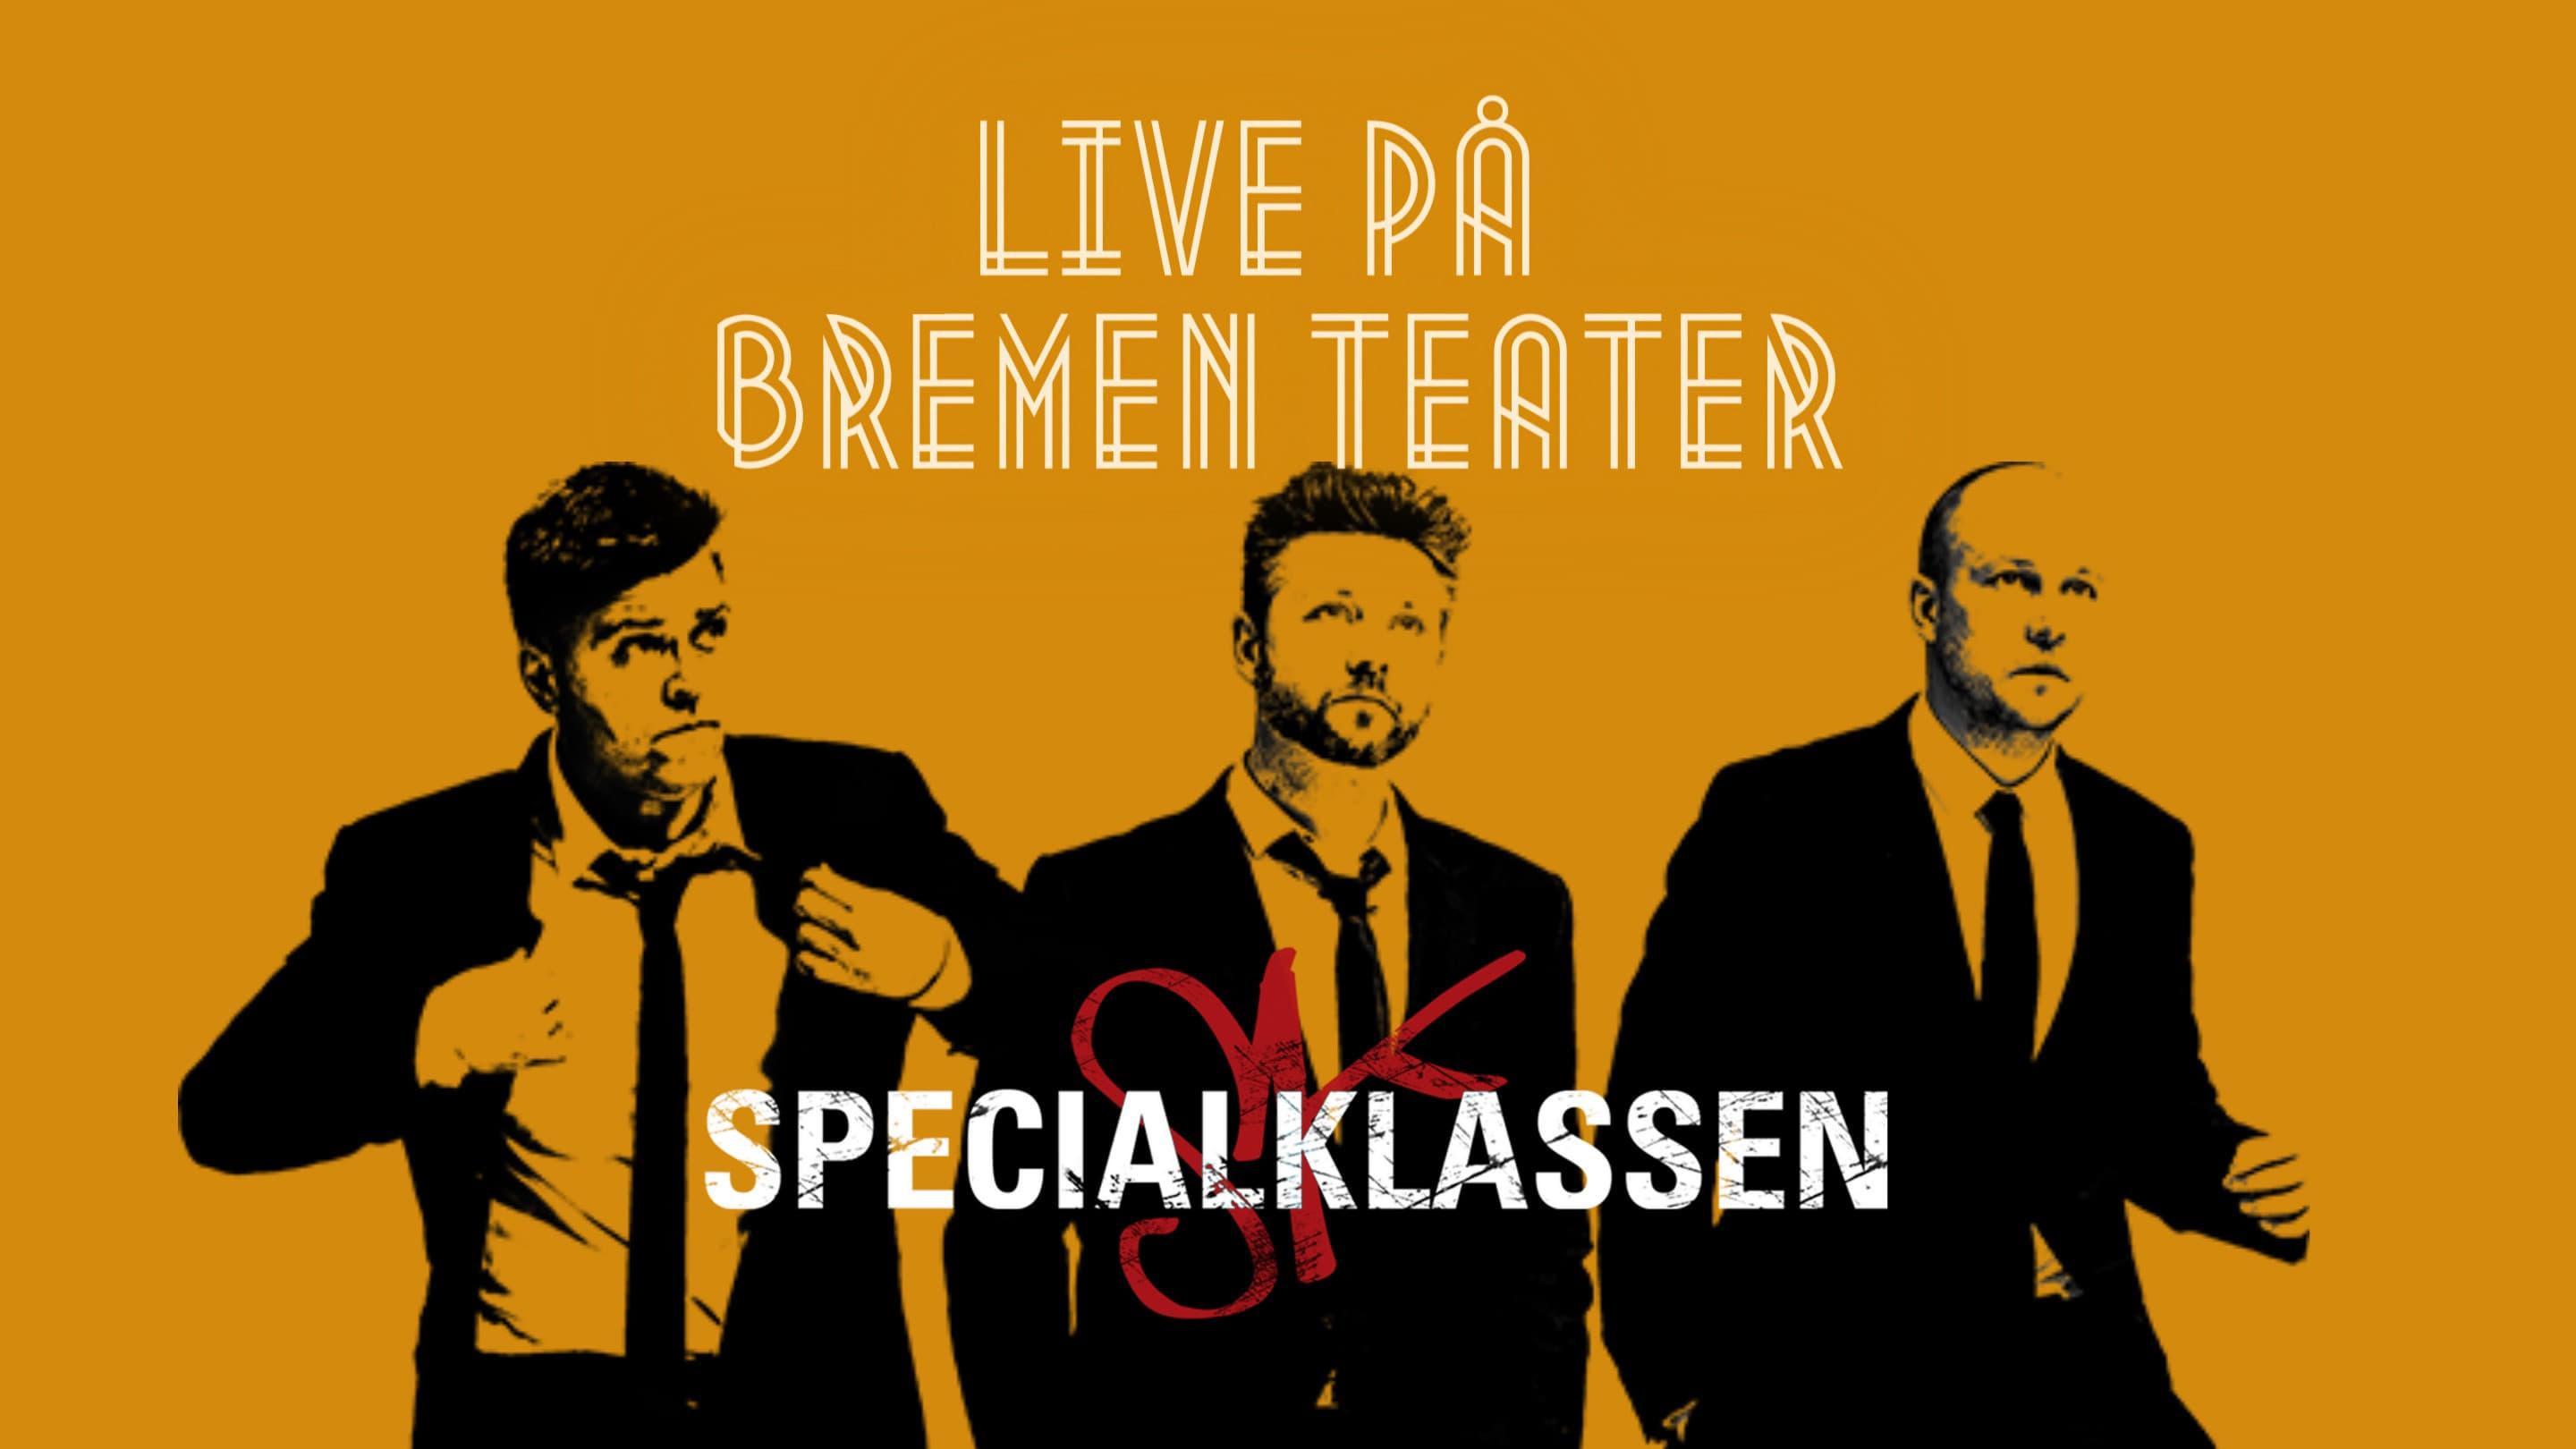 Specialklassen - Live På Bremen Teater backdrop